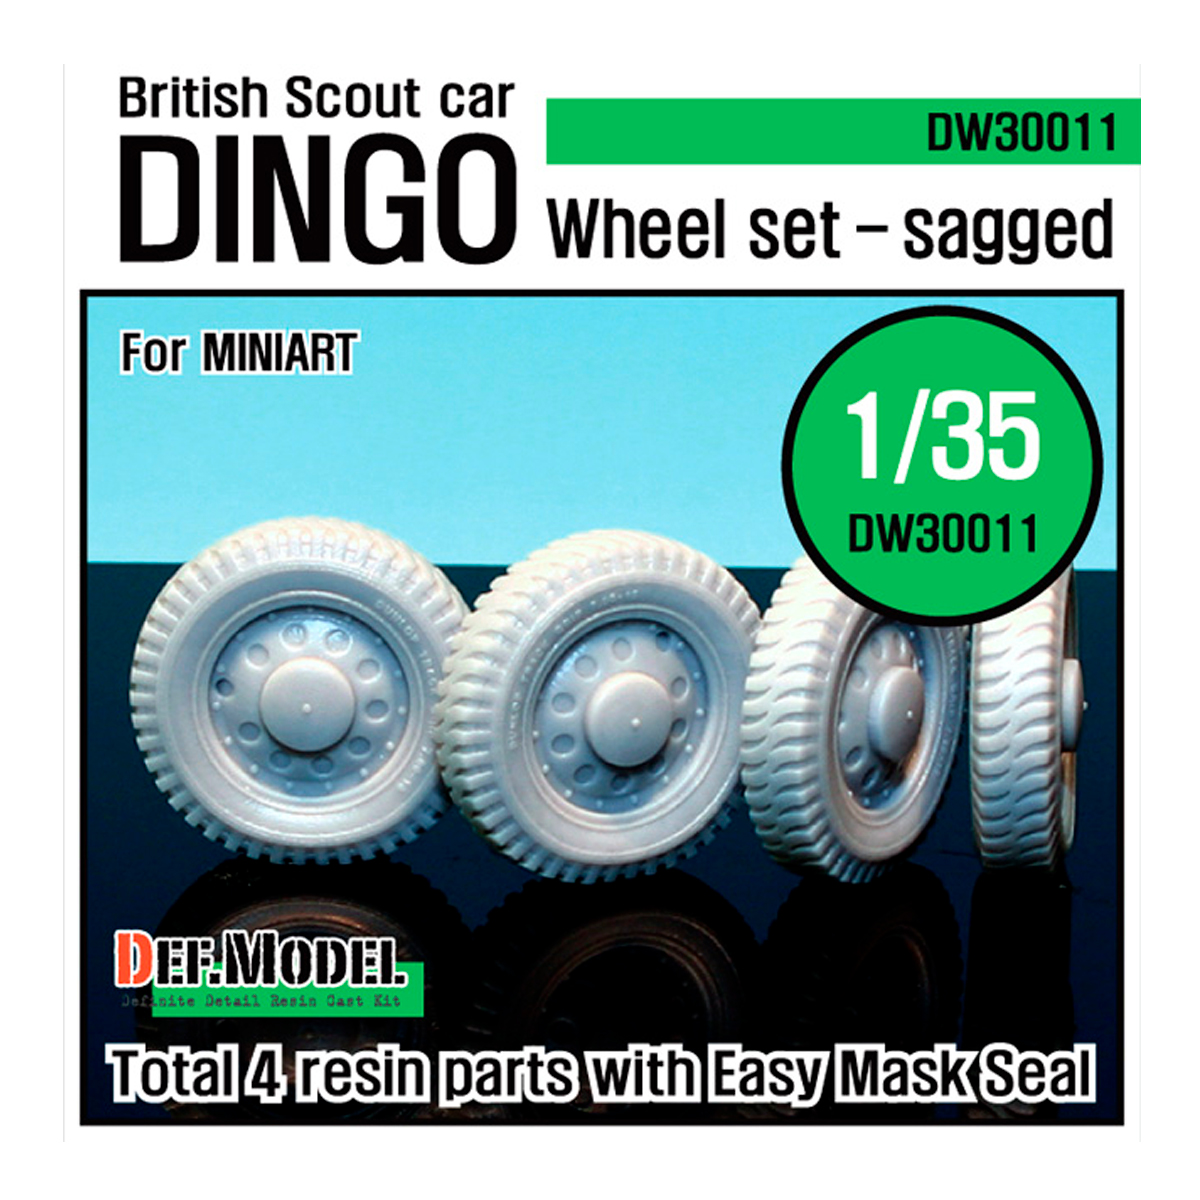 U.K. Dingo Wheel set (for Miniart 1/35)